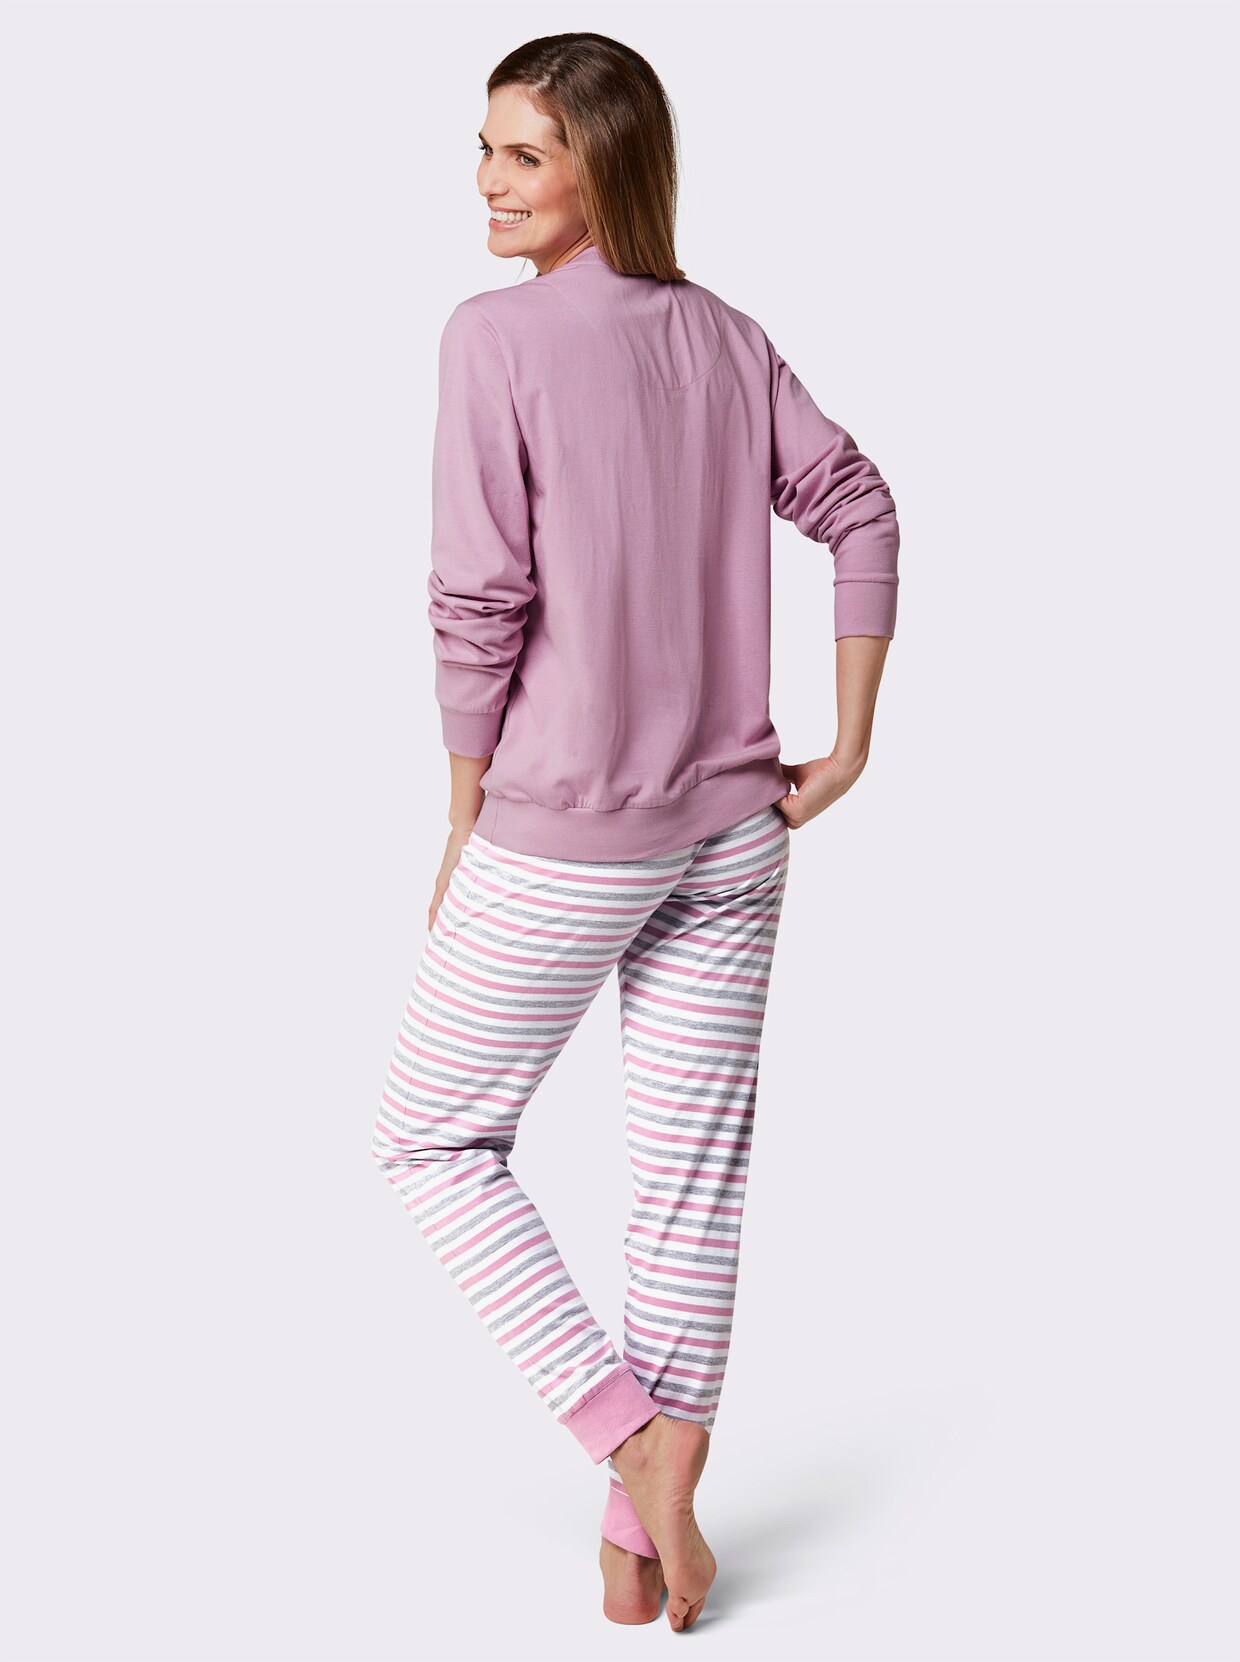 Schlafanzug - rosé-grau-meliert-geringelt